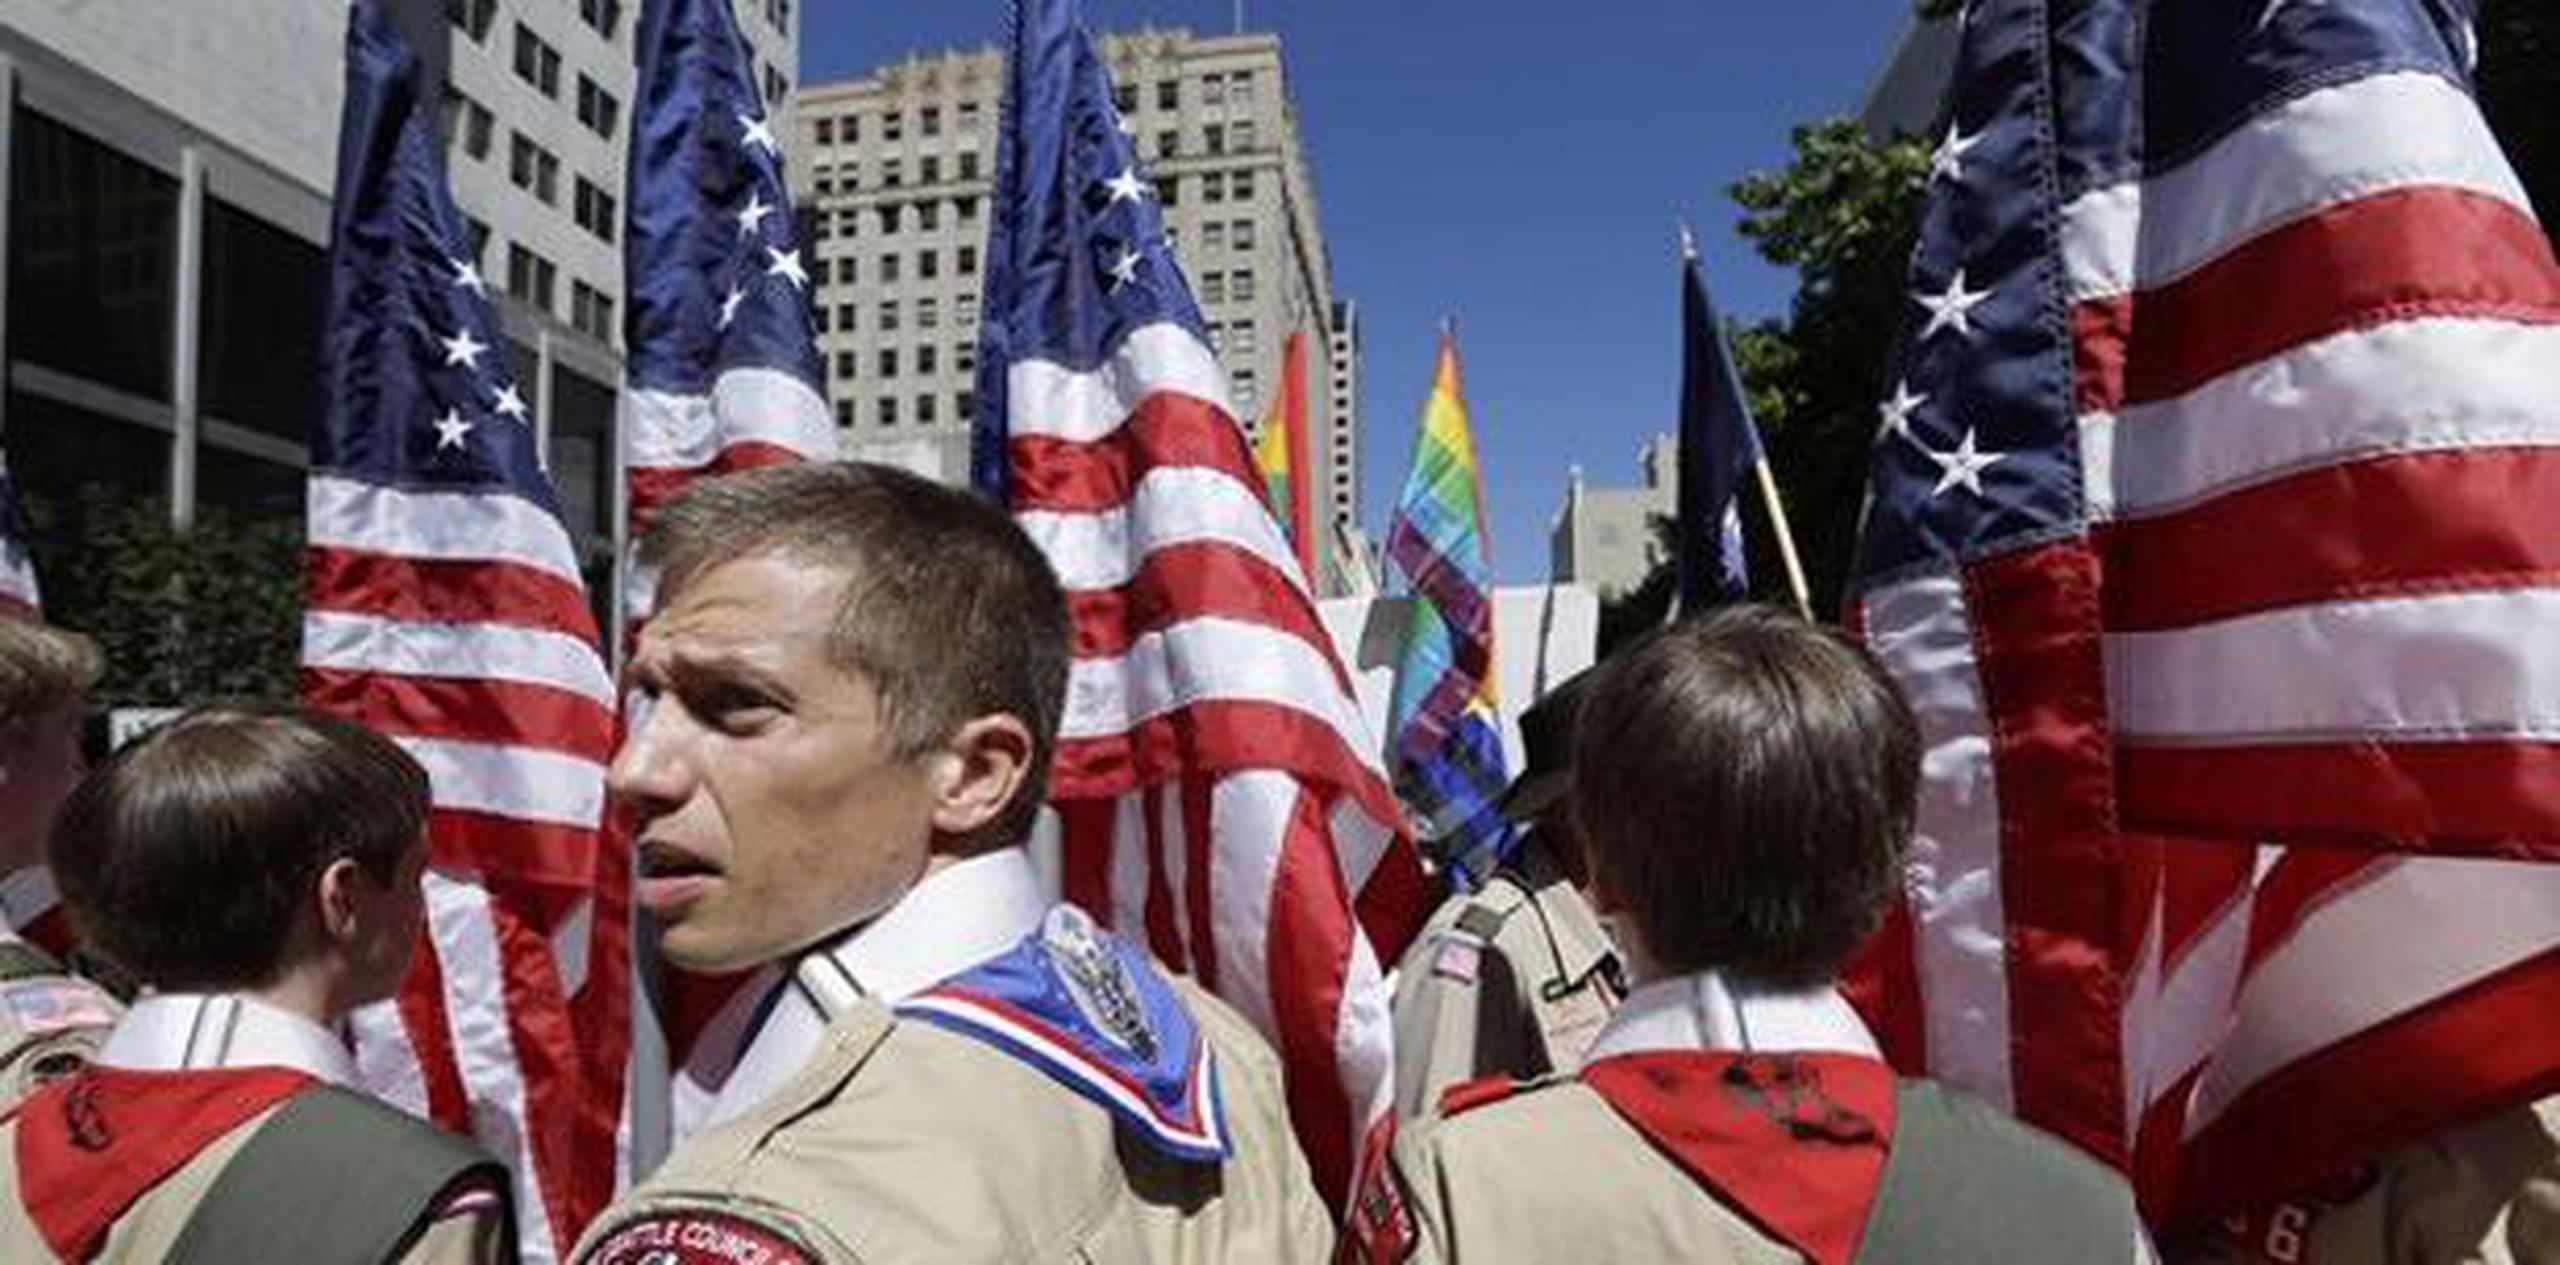 Casi el 70 por ciento de las patrullas Scout de EE.UU están afiliadas a organizaciones religiosas y algunas han anunciado que se desvincularán del movimiento escutista por su tolerancia de la homosexualidad. (AP)